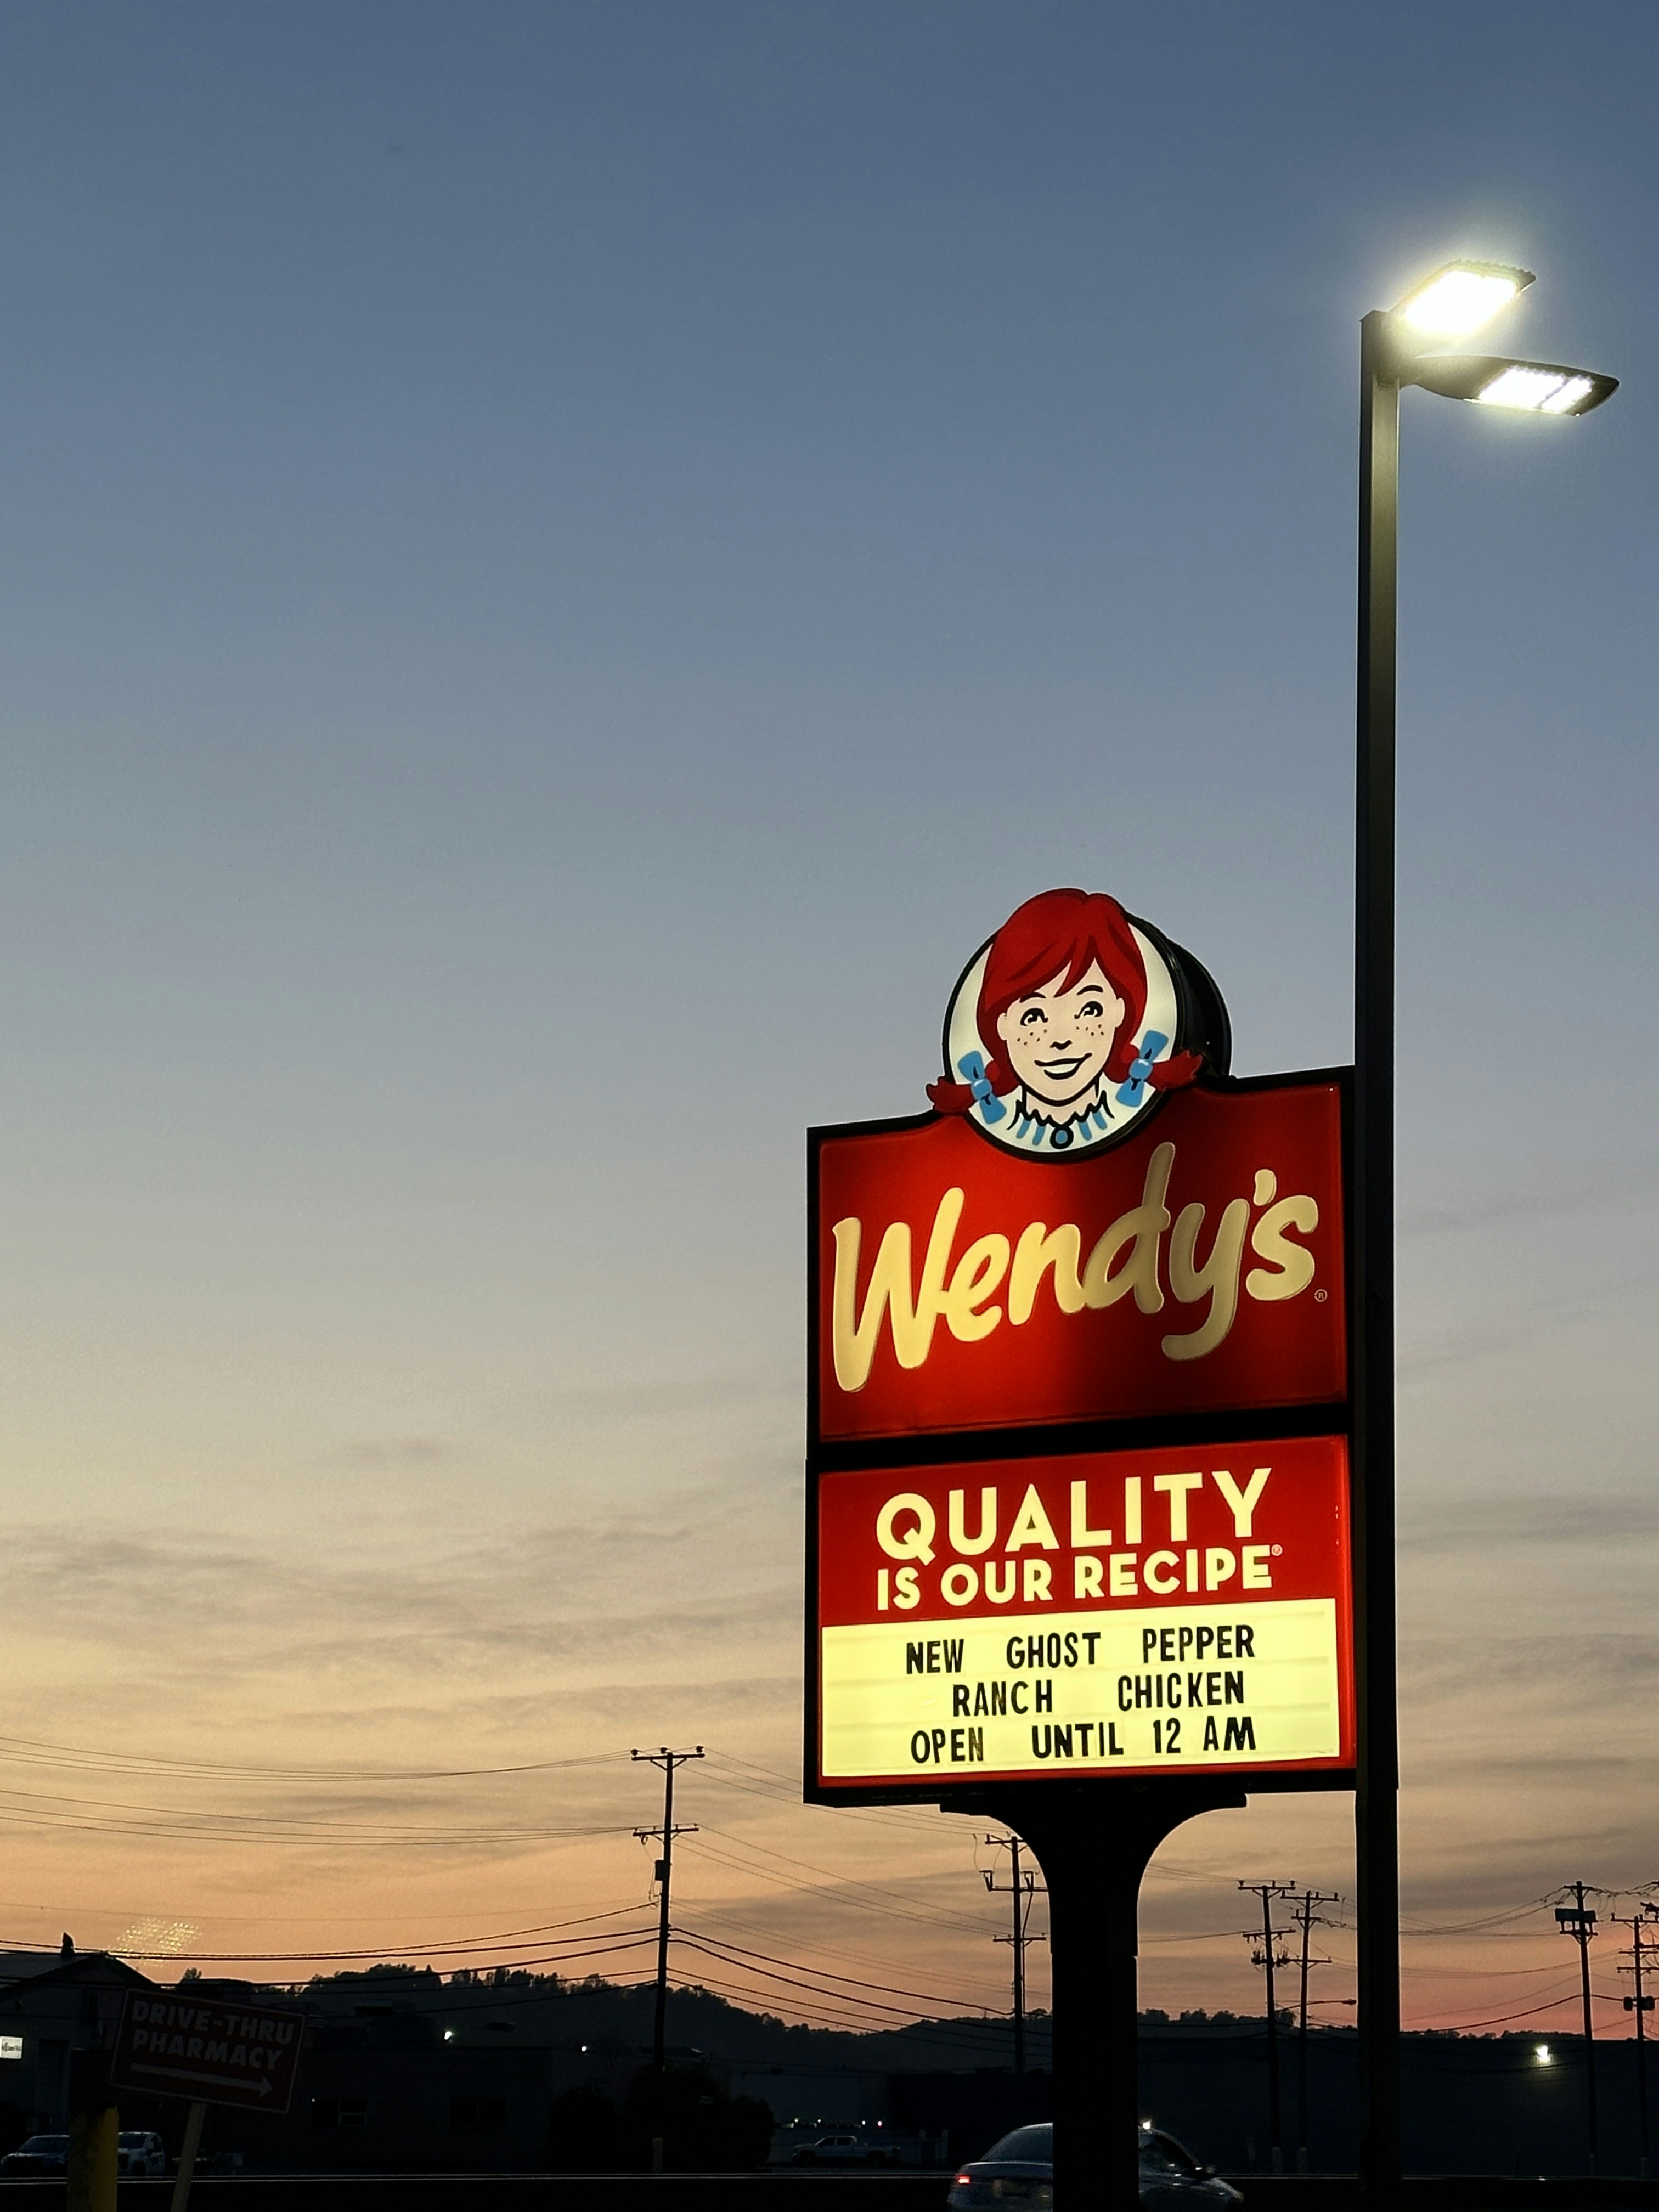 Sunset at Wendy’s, Ambridge, PA